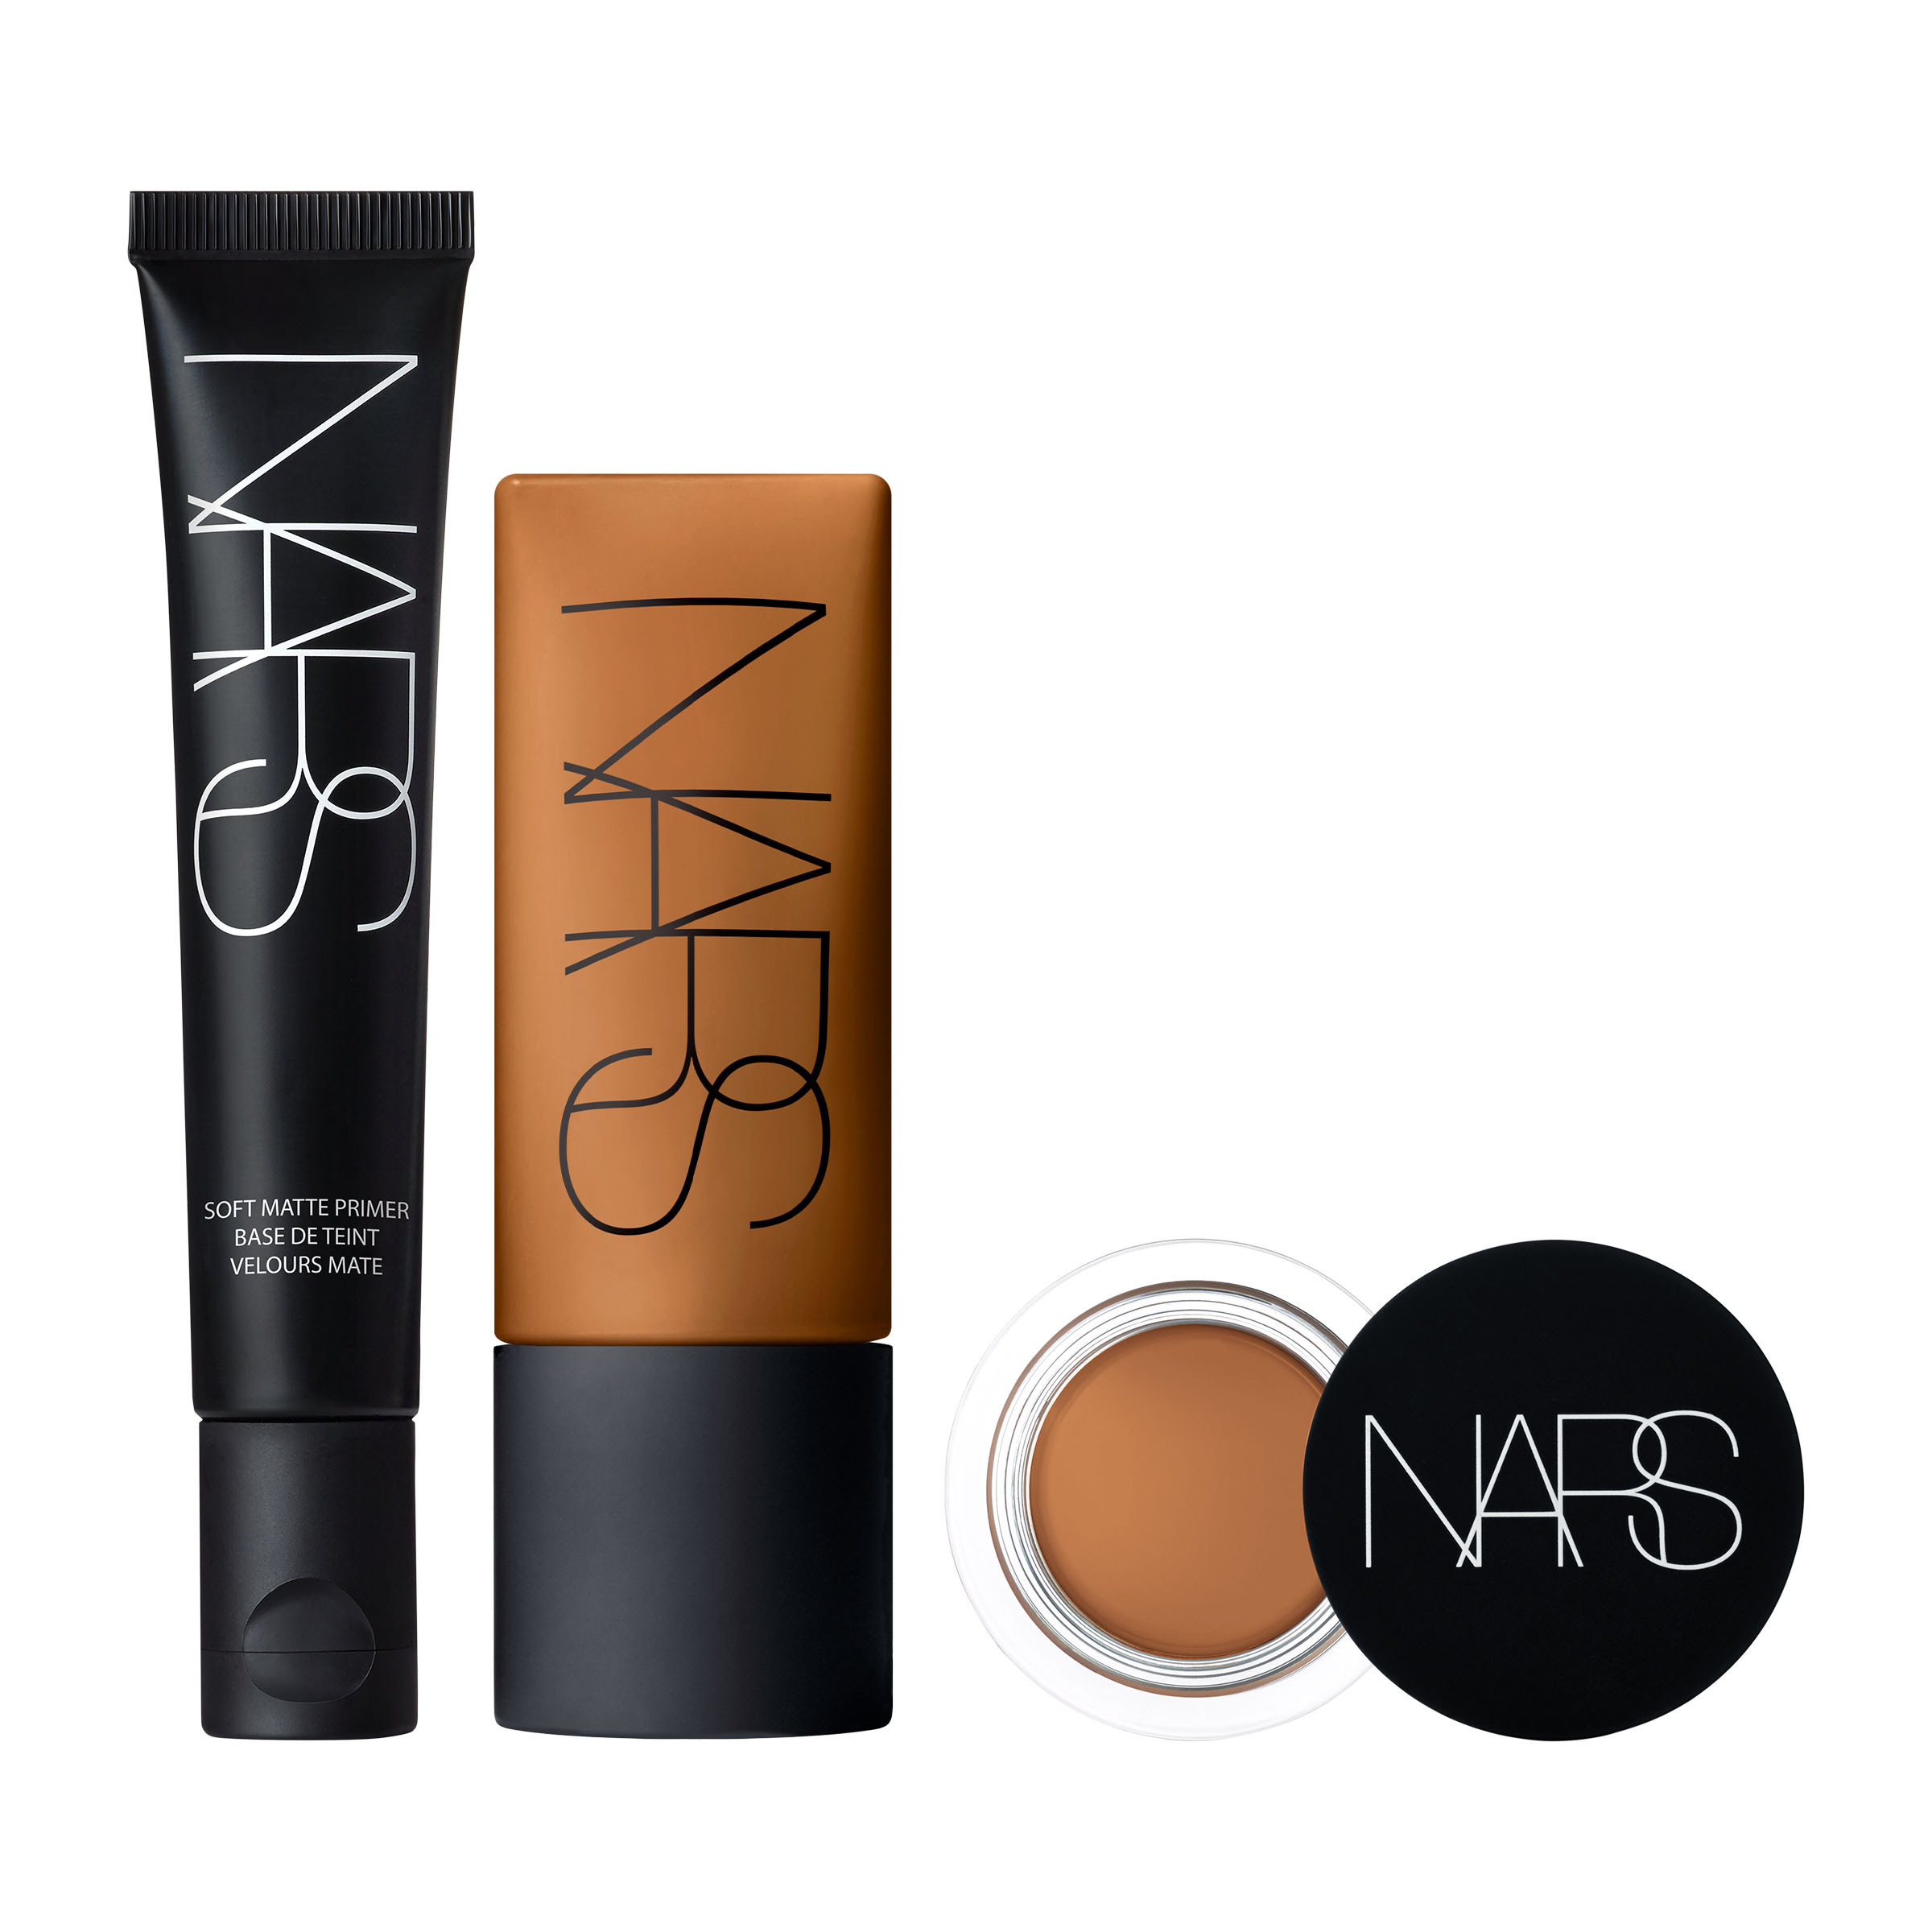 Soft Matte & Foundation Bundle | Cosmetics Primer, Concealer NARS